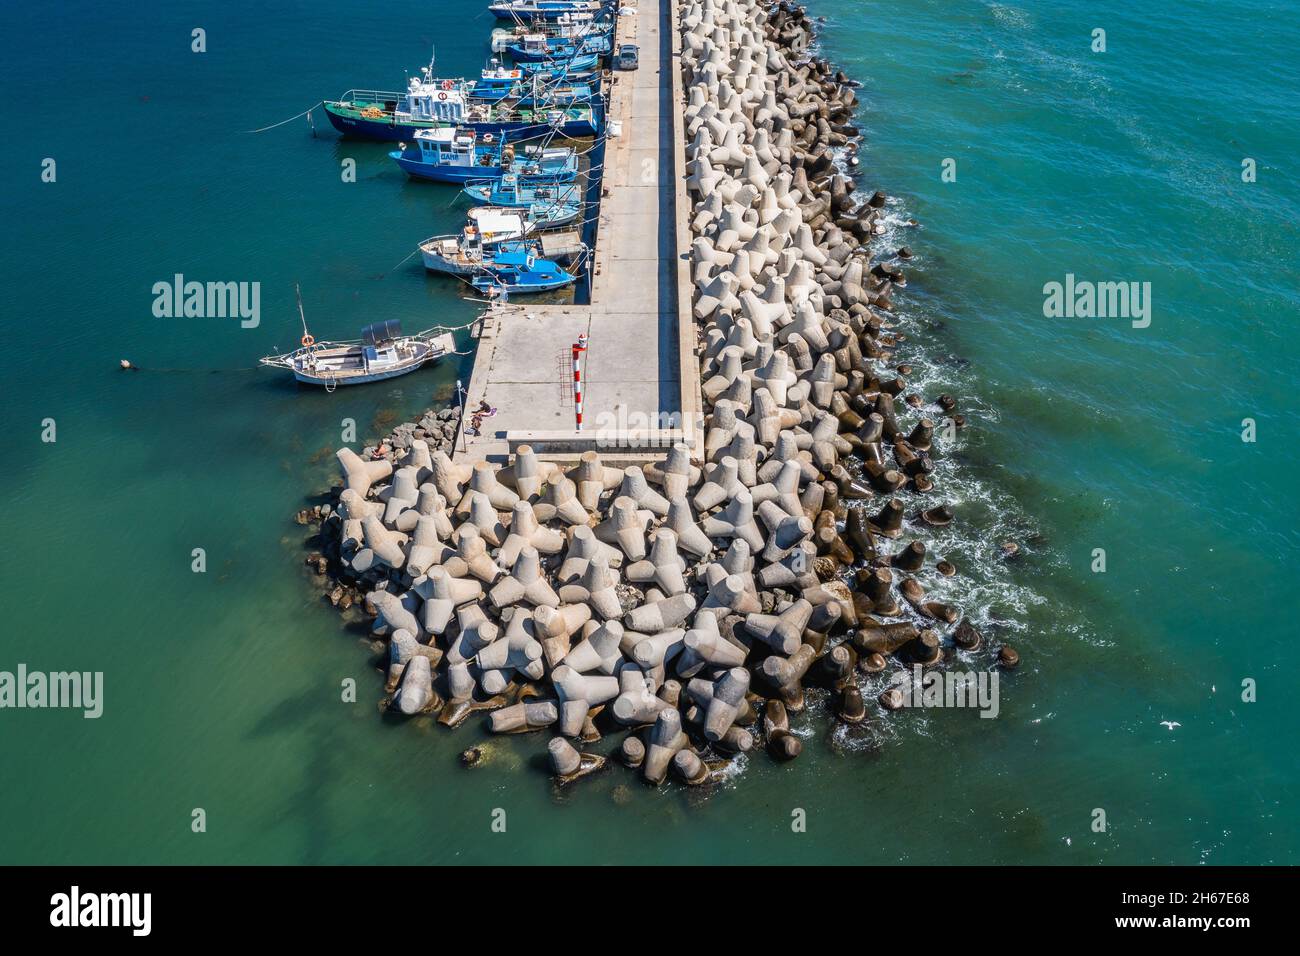 Vue de drone sur la digue dans le port de la ville de Byala et station balnéaire dans l'est de la Bulgarie, située sur la côte bulgare de la mer Noire dans la province de Varna, Bulgarie Banque D'Images